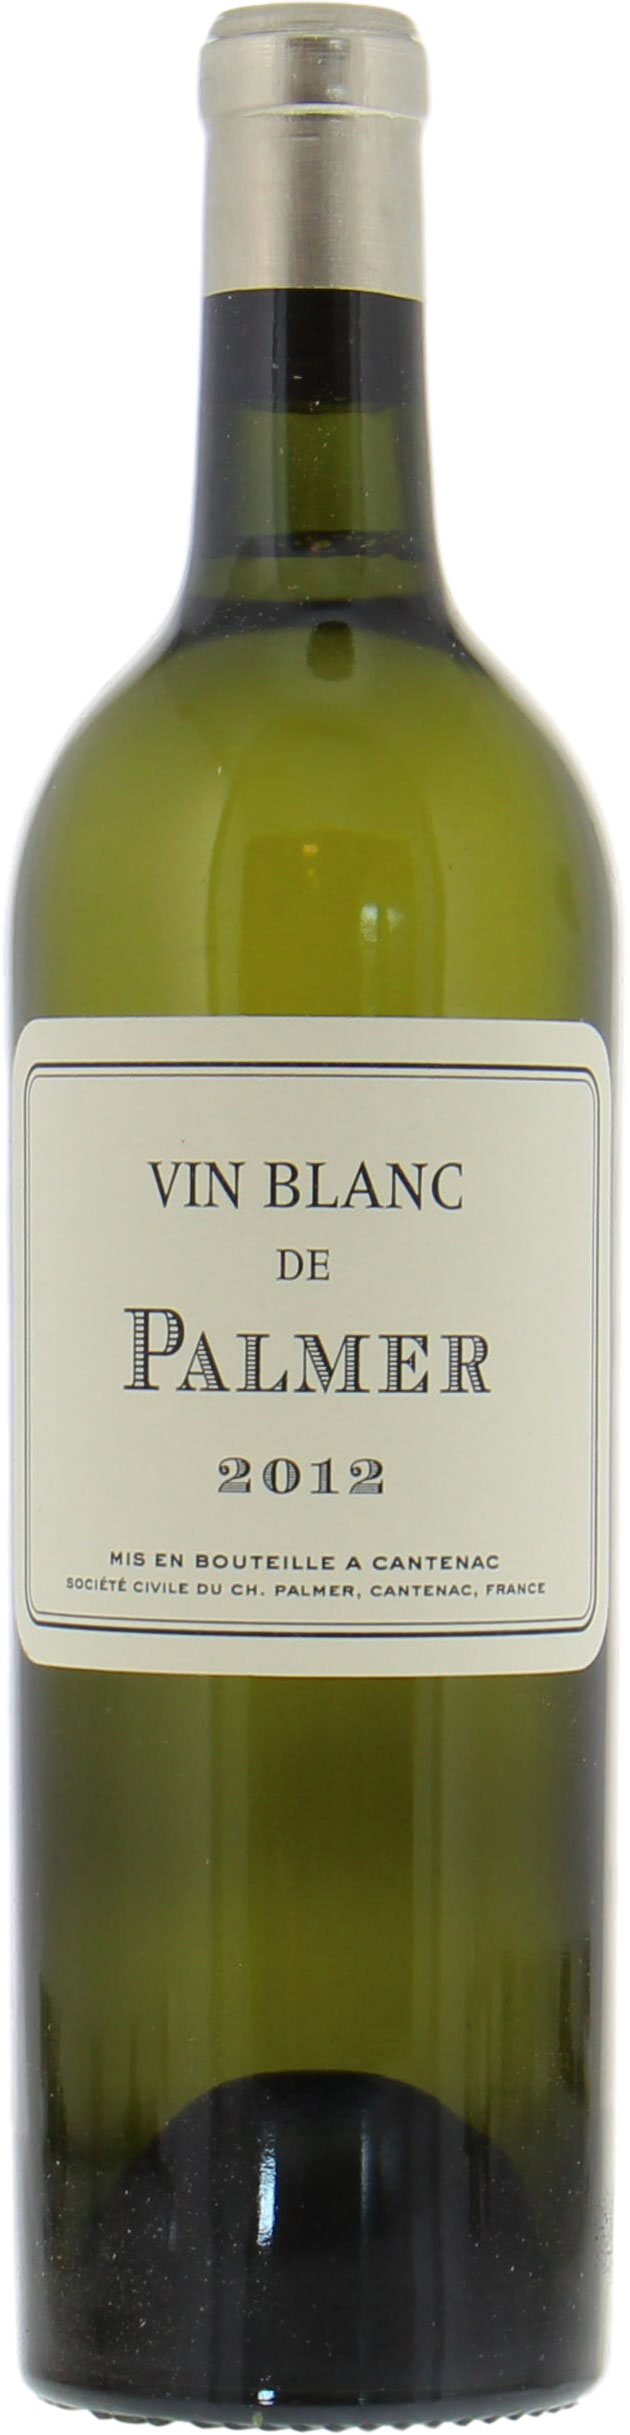 Chateau Palmer - Vin Blanc de Palmer 2012 Perfect